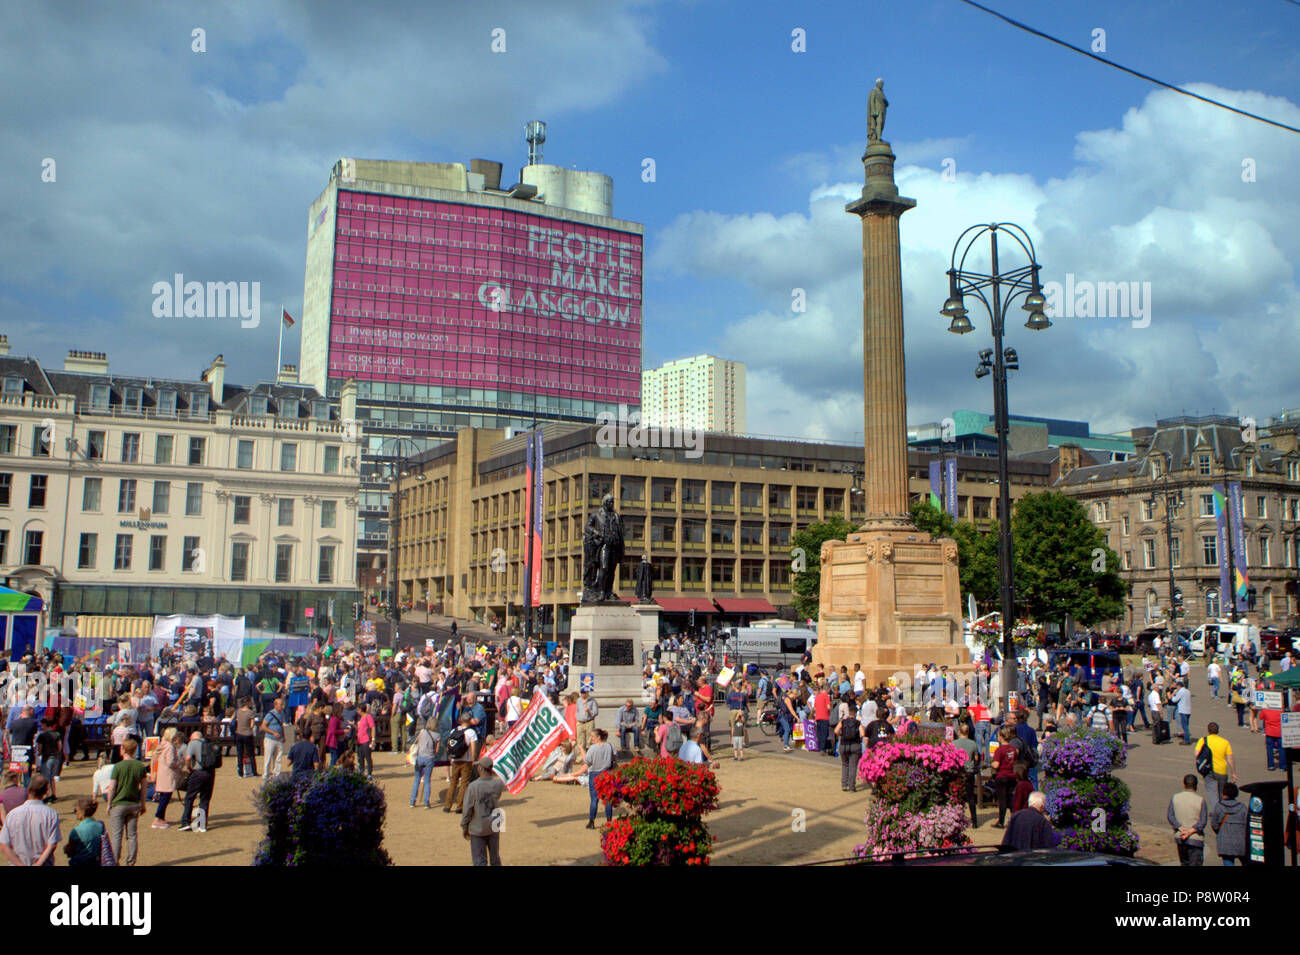 Glasgow, Schottland, Großbritannien, 13. Juli. Donald Trump weltweit Protest unterstützt auf dem George Square, dem Civic und administrative Zentrum des city.Organized durch Schottland gegen Trumpf es zu erwarten war 5000 Unterstützer gewinnen. Gerard Fähre / alamy Nachrichten Stockfoto